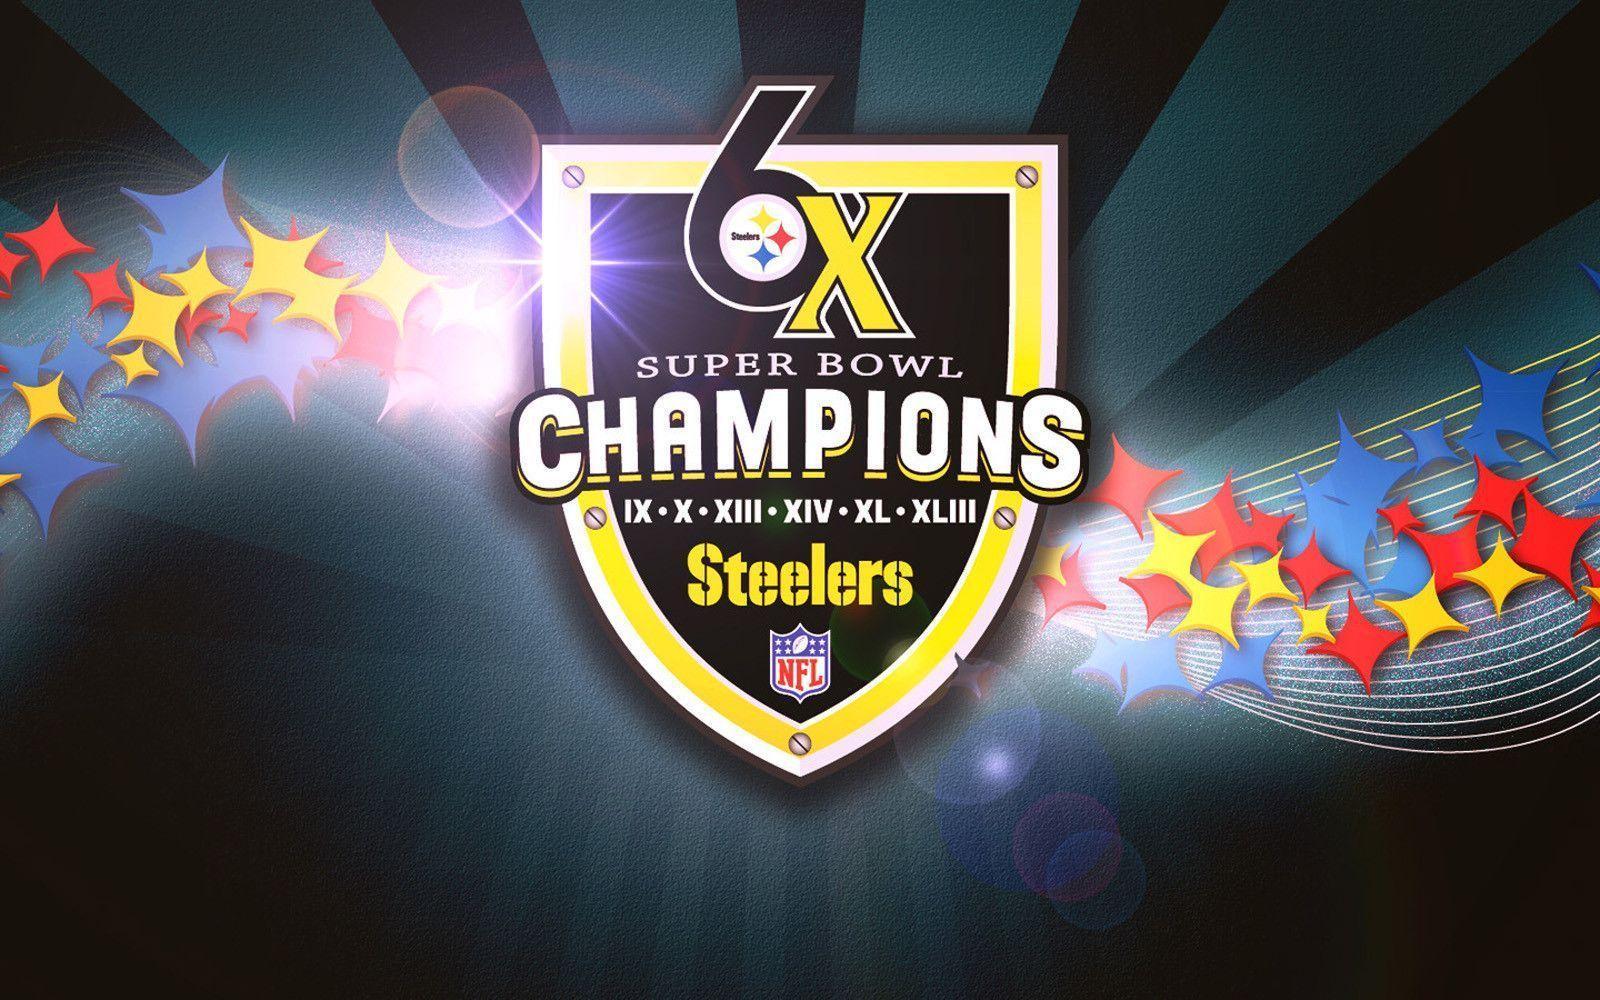 Pittsburgh Steelers Desktop Wallpapers